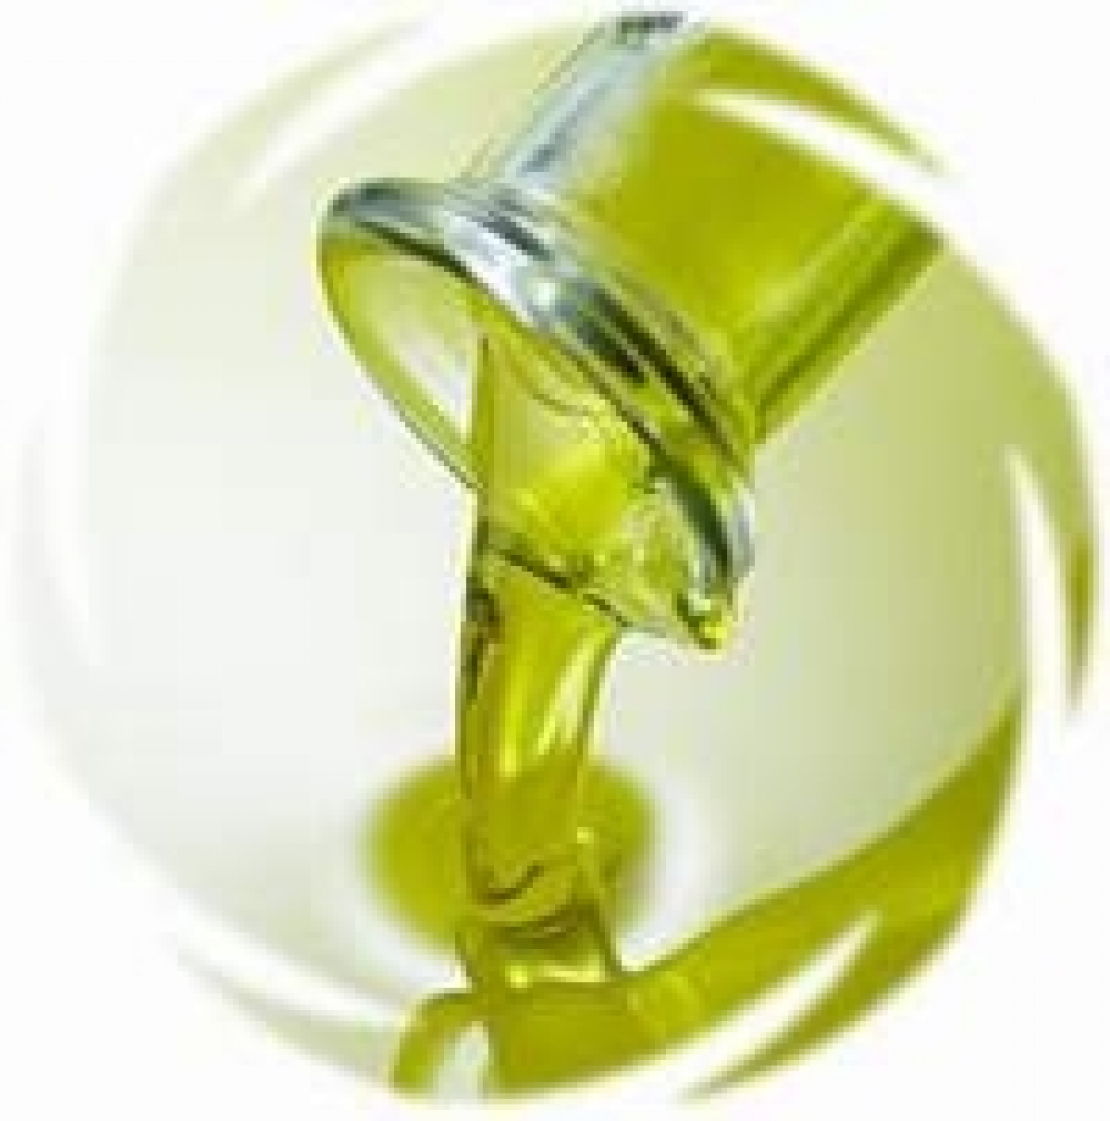 Olio d'oliva e salute, un binomio perfetto, quando non si scivola